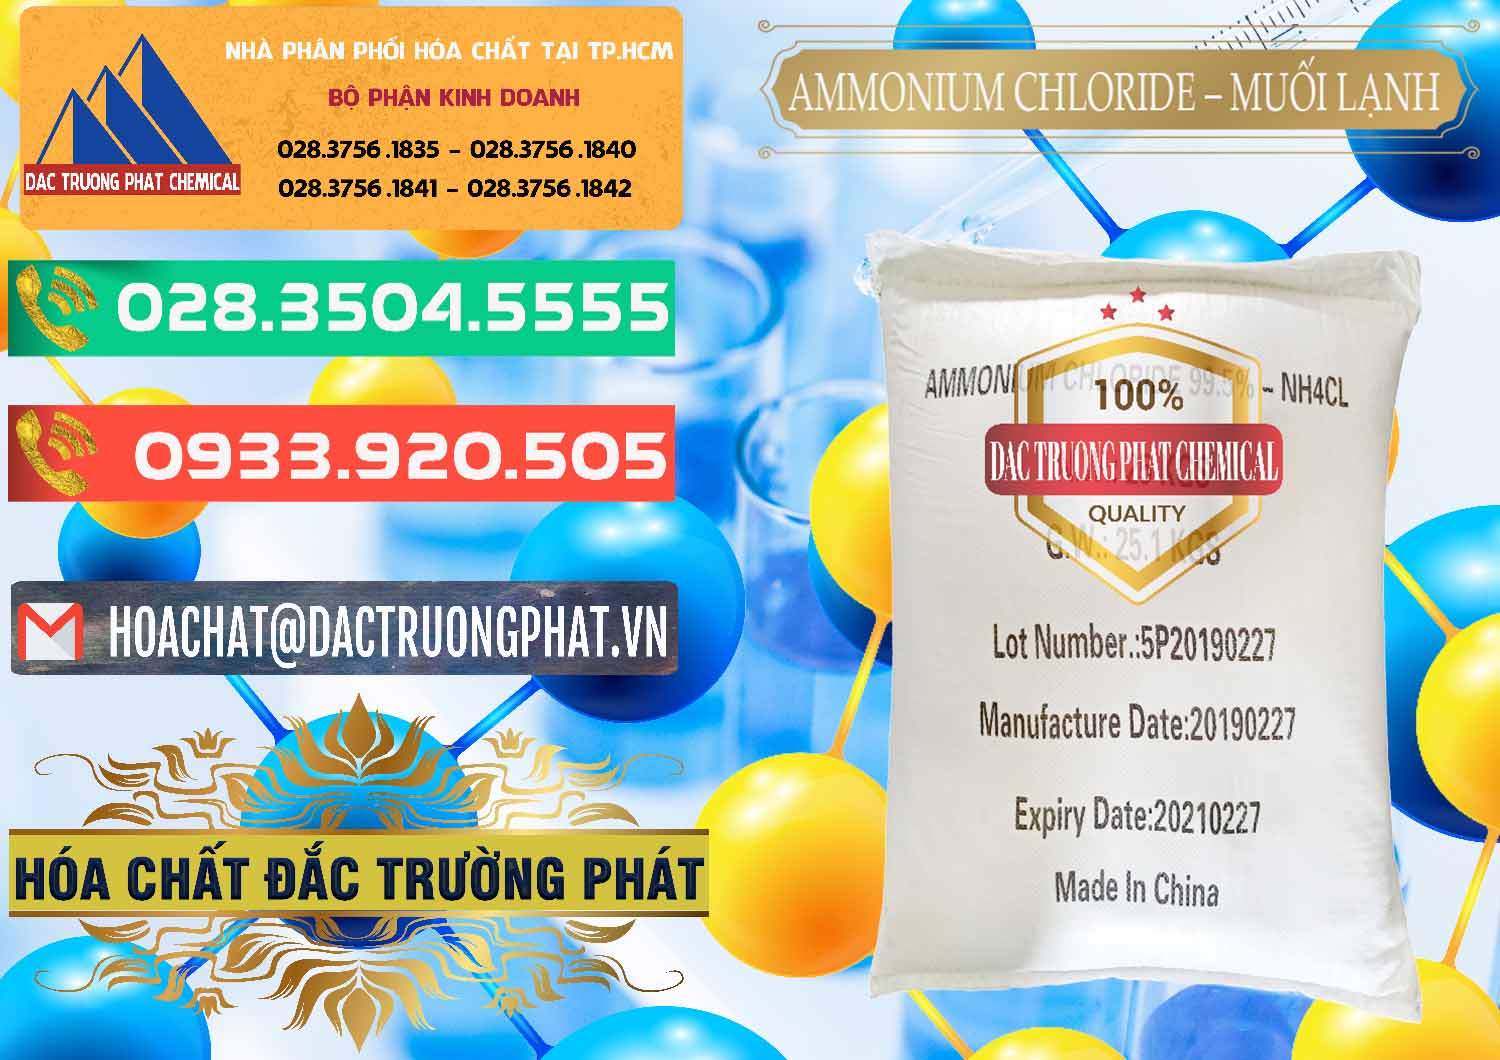 Cty phân phối ( bán ) Ammonium Chloride - Muối Lạnh NH4CL Trung Quốc China - 0021 - Cty bán & cung cấp hóa chất tại TP.HCM - congtyhoachat.com.vn